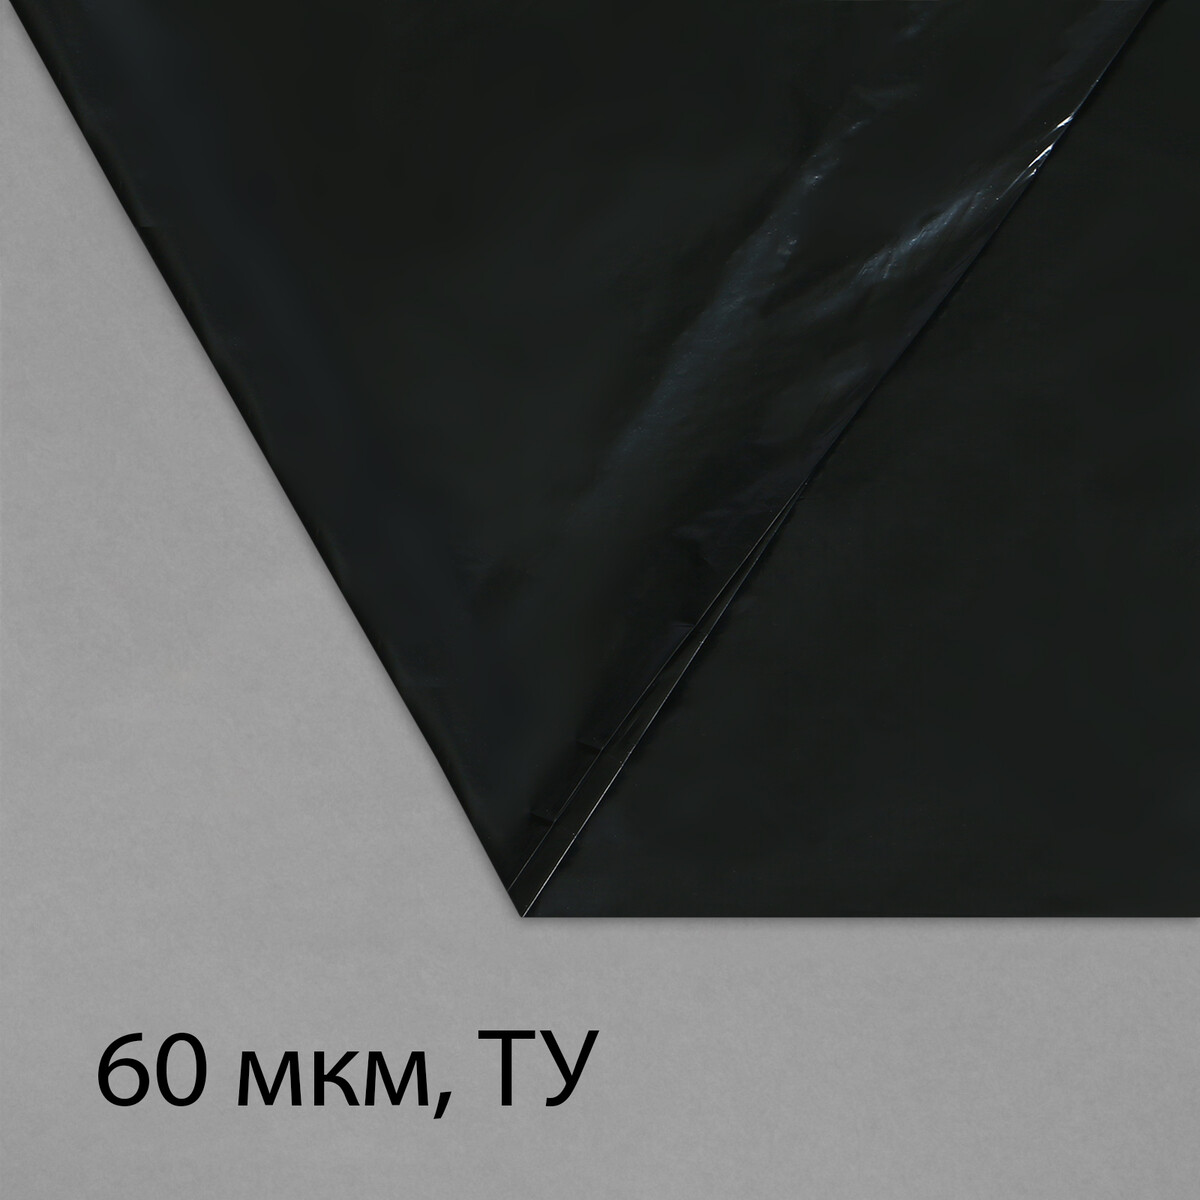 Пленка полиэтиленовая, техническая, толщина 60 мкм, 5 × 3 м, рукав (1,5 м × 2), черная, 2 сорт, эконом 50 % пленка полиэтиленовая техническая 60 мкм черная длина 10 м ширина 3 м рукав 1 5 м × 2 эконом 50%